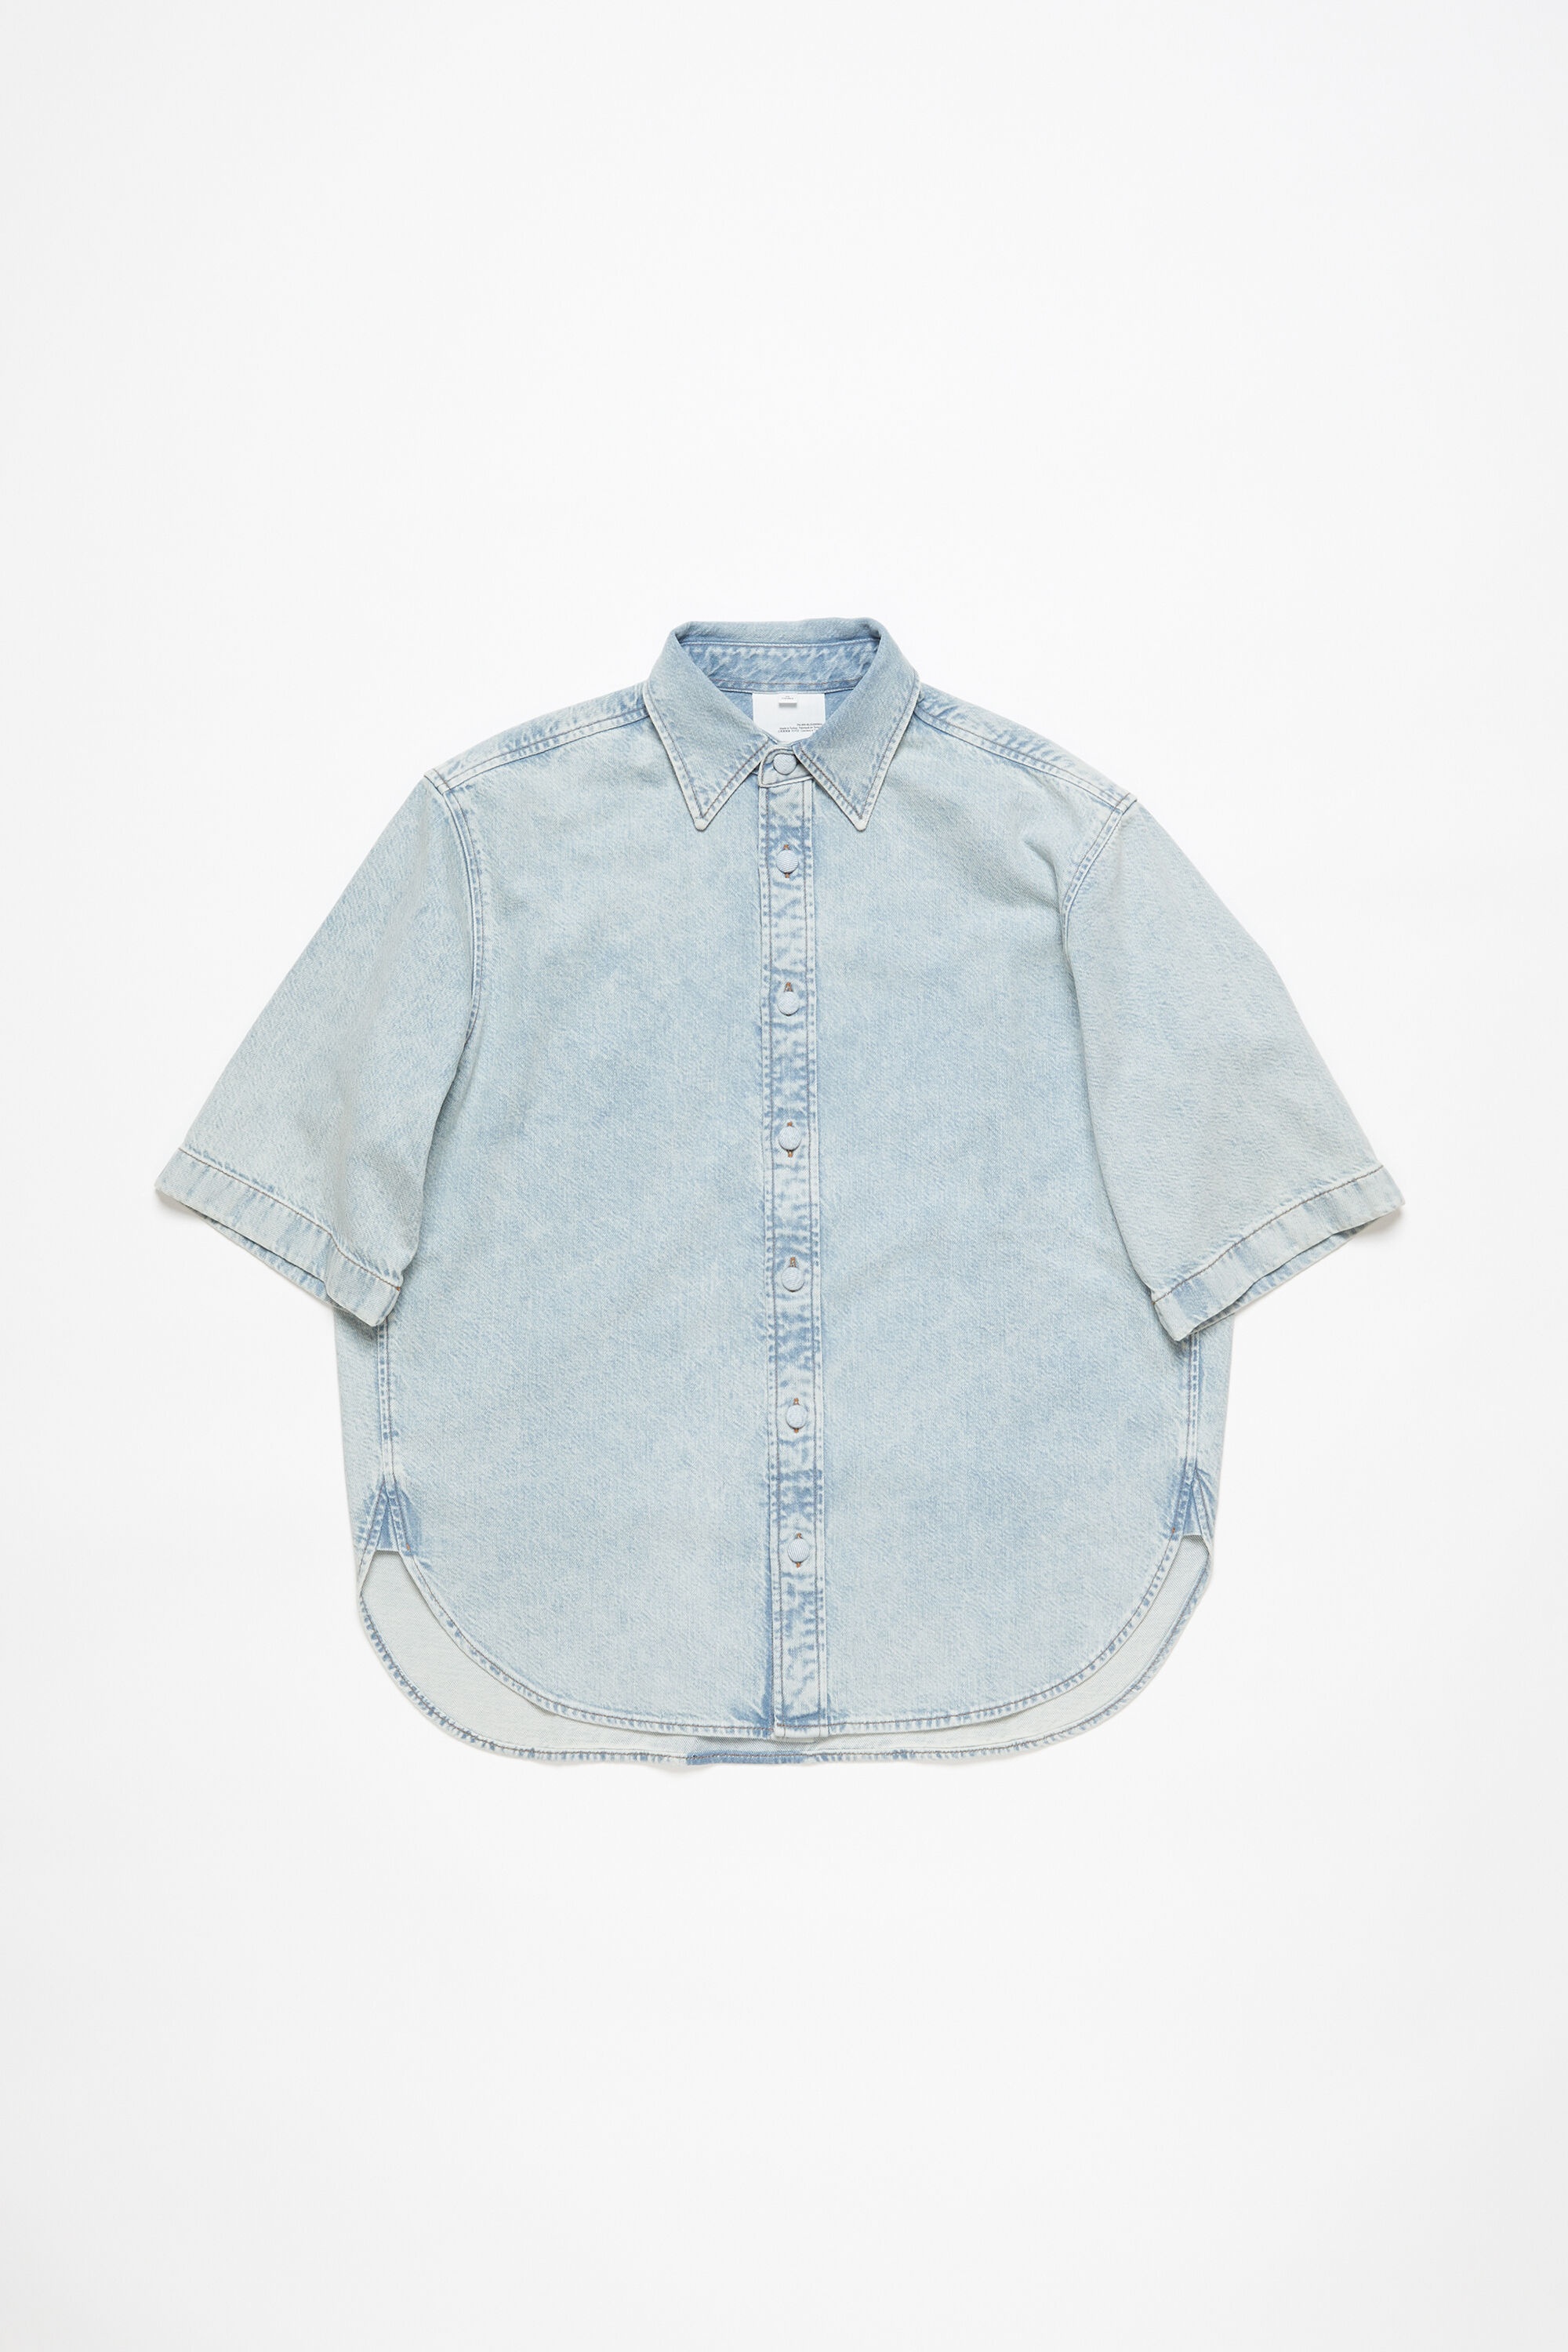 Denim button-up shirt - Relaxed fit - Indigo blue - 1